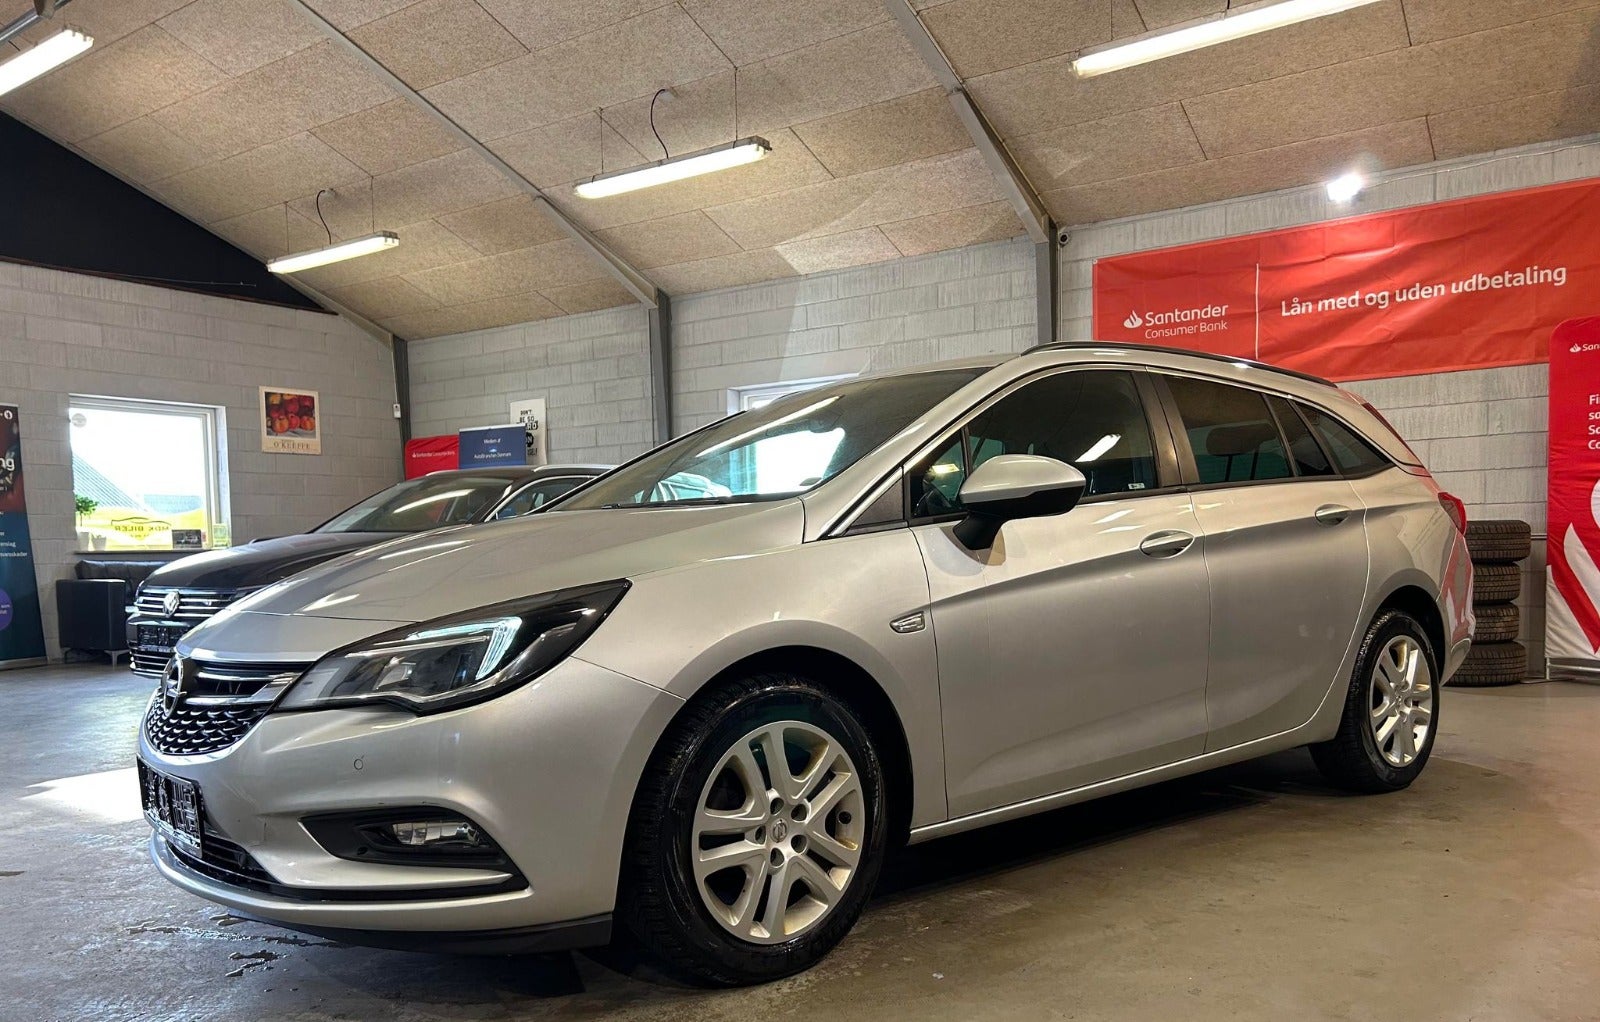 Opel Astra 1,6 CDTi 110 Enjoy Sports Tourer Diesel modelår